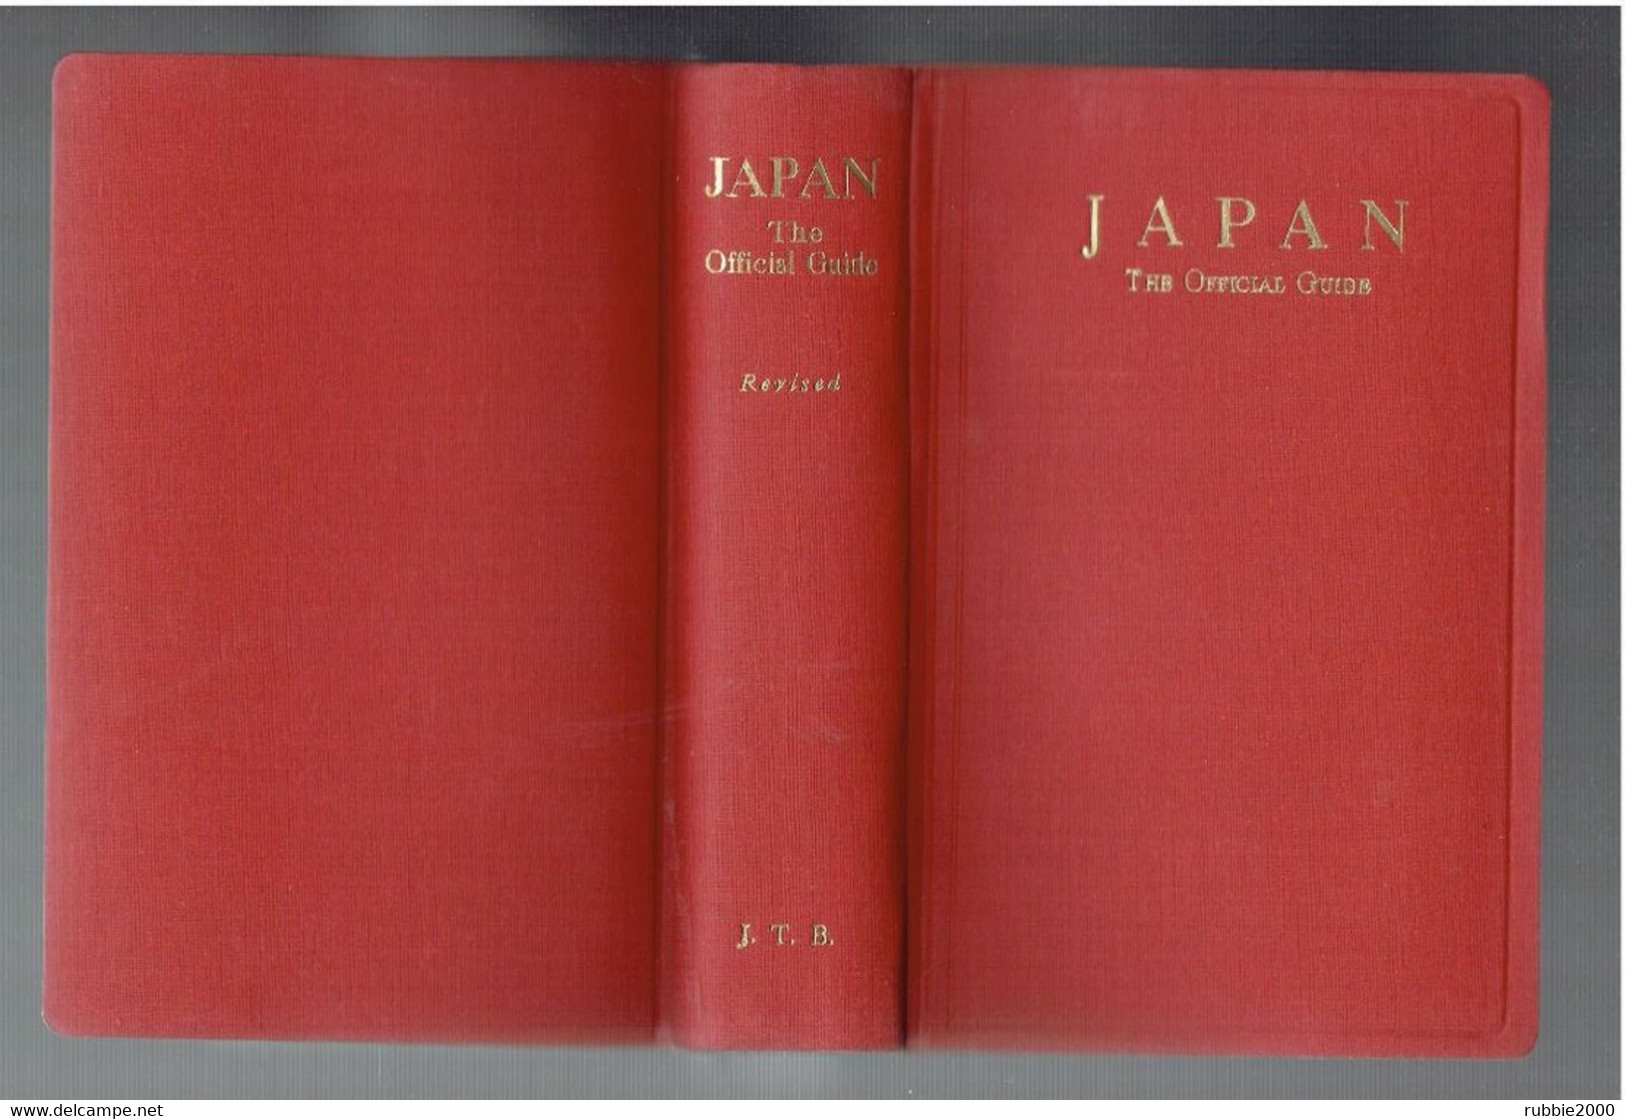 JAPAN 1959 THE OFFICIAL GUIDE BY JAPAN TRAVEL BUREAU JAPON GUIDE TOURISTIQUE OFFICIEL - Asien